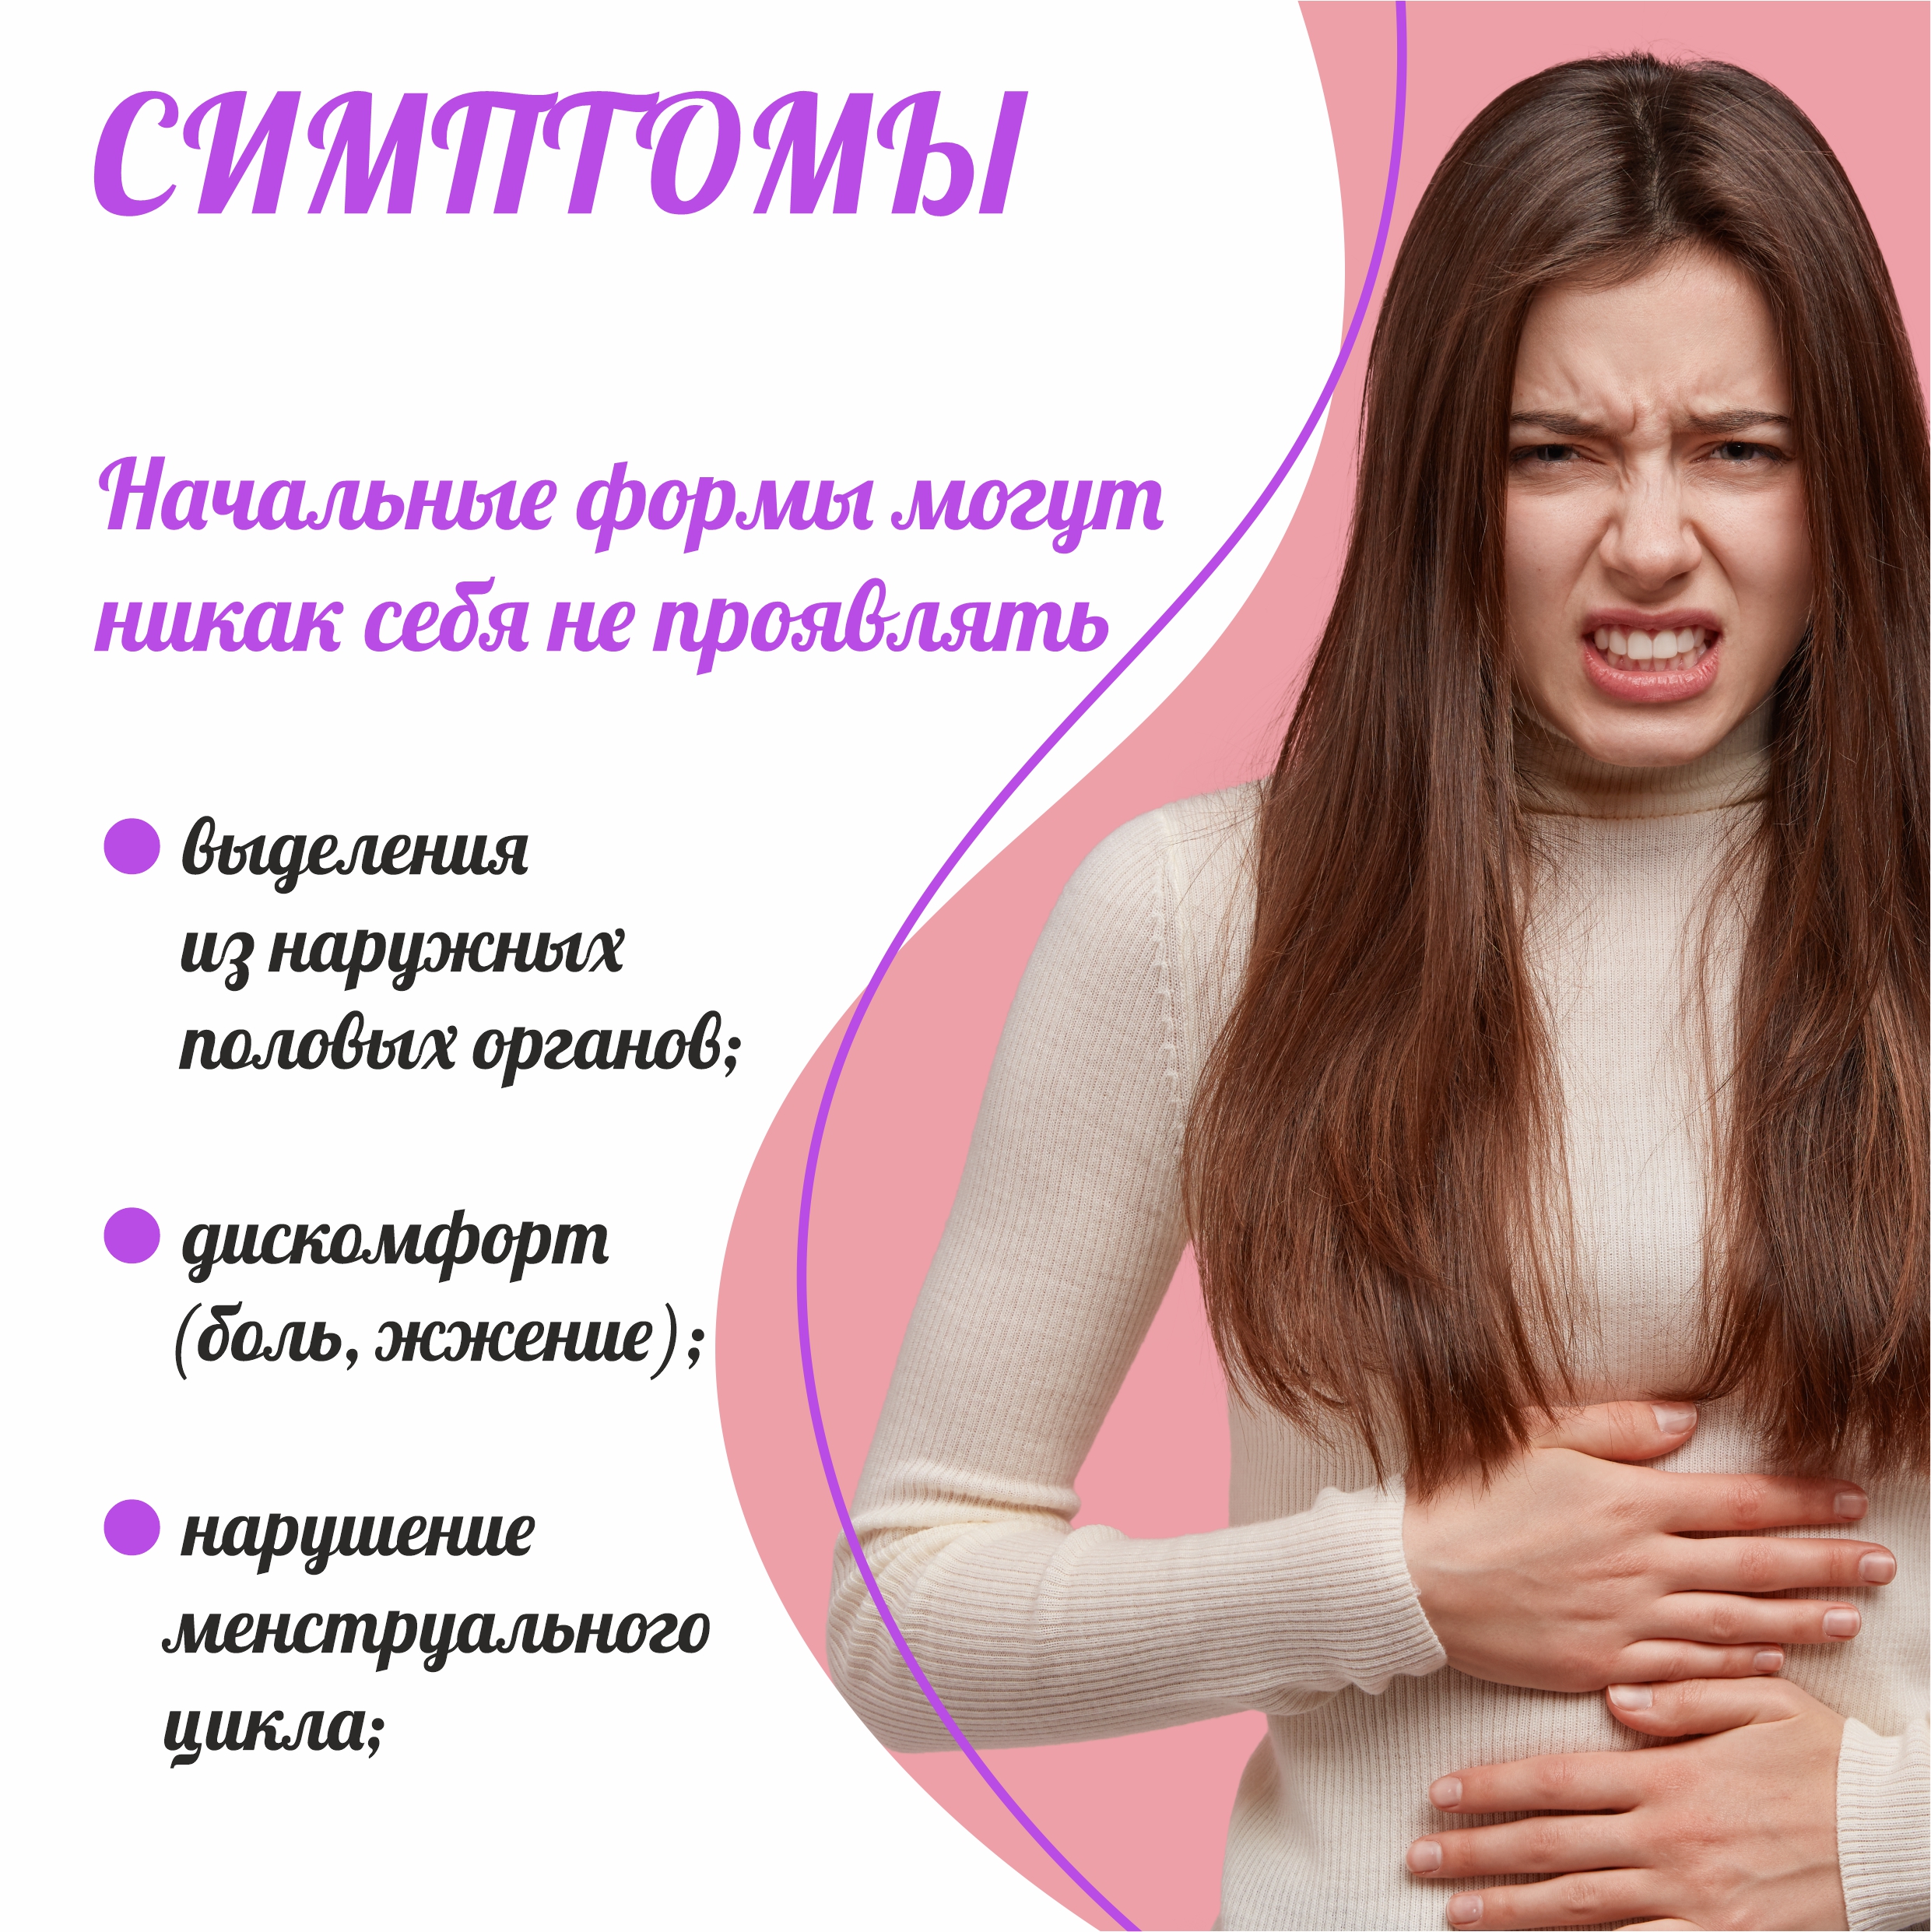 Симптомы женских заболеваний